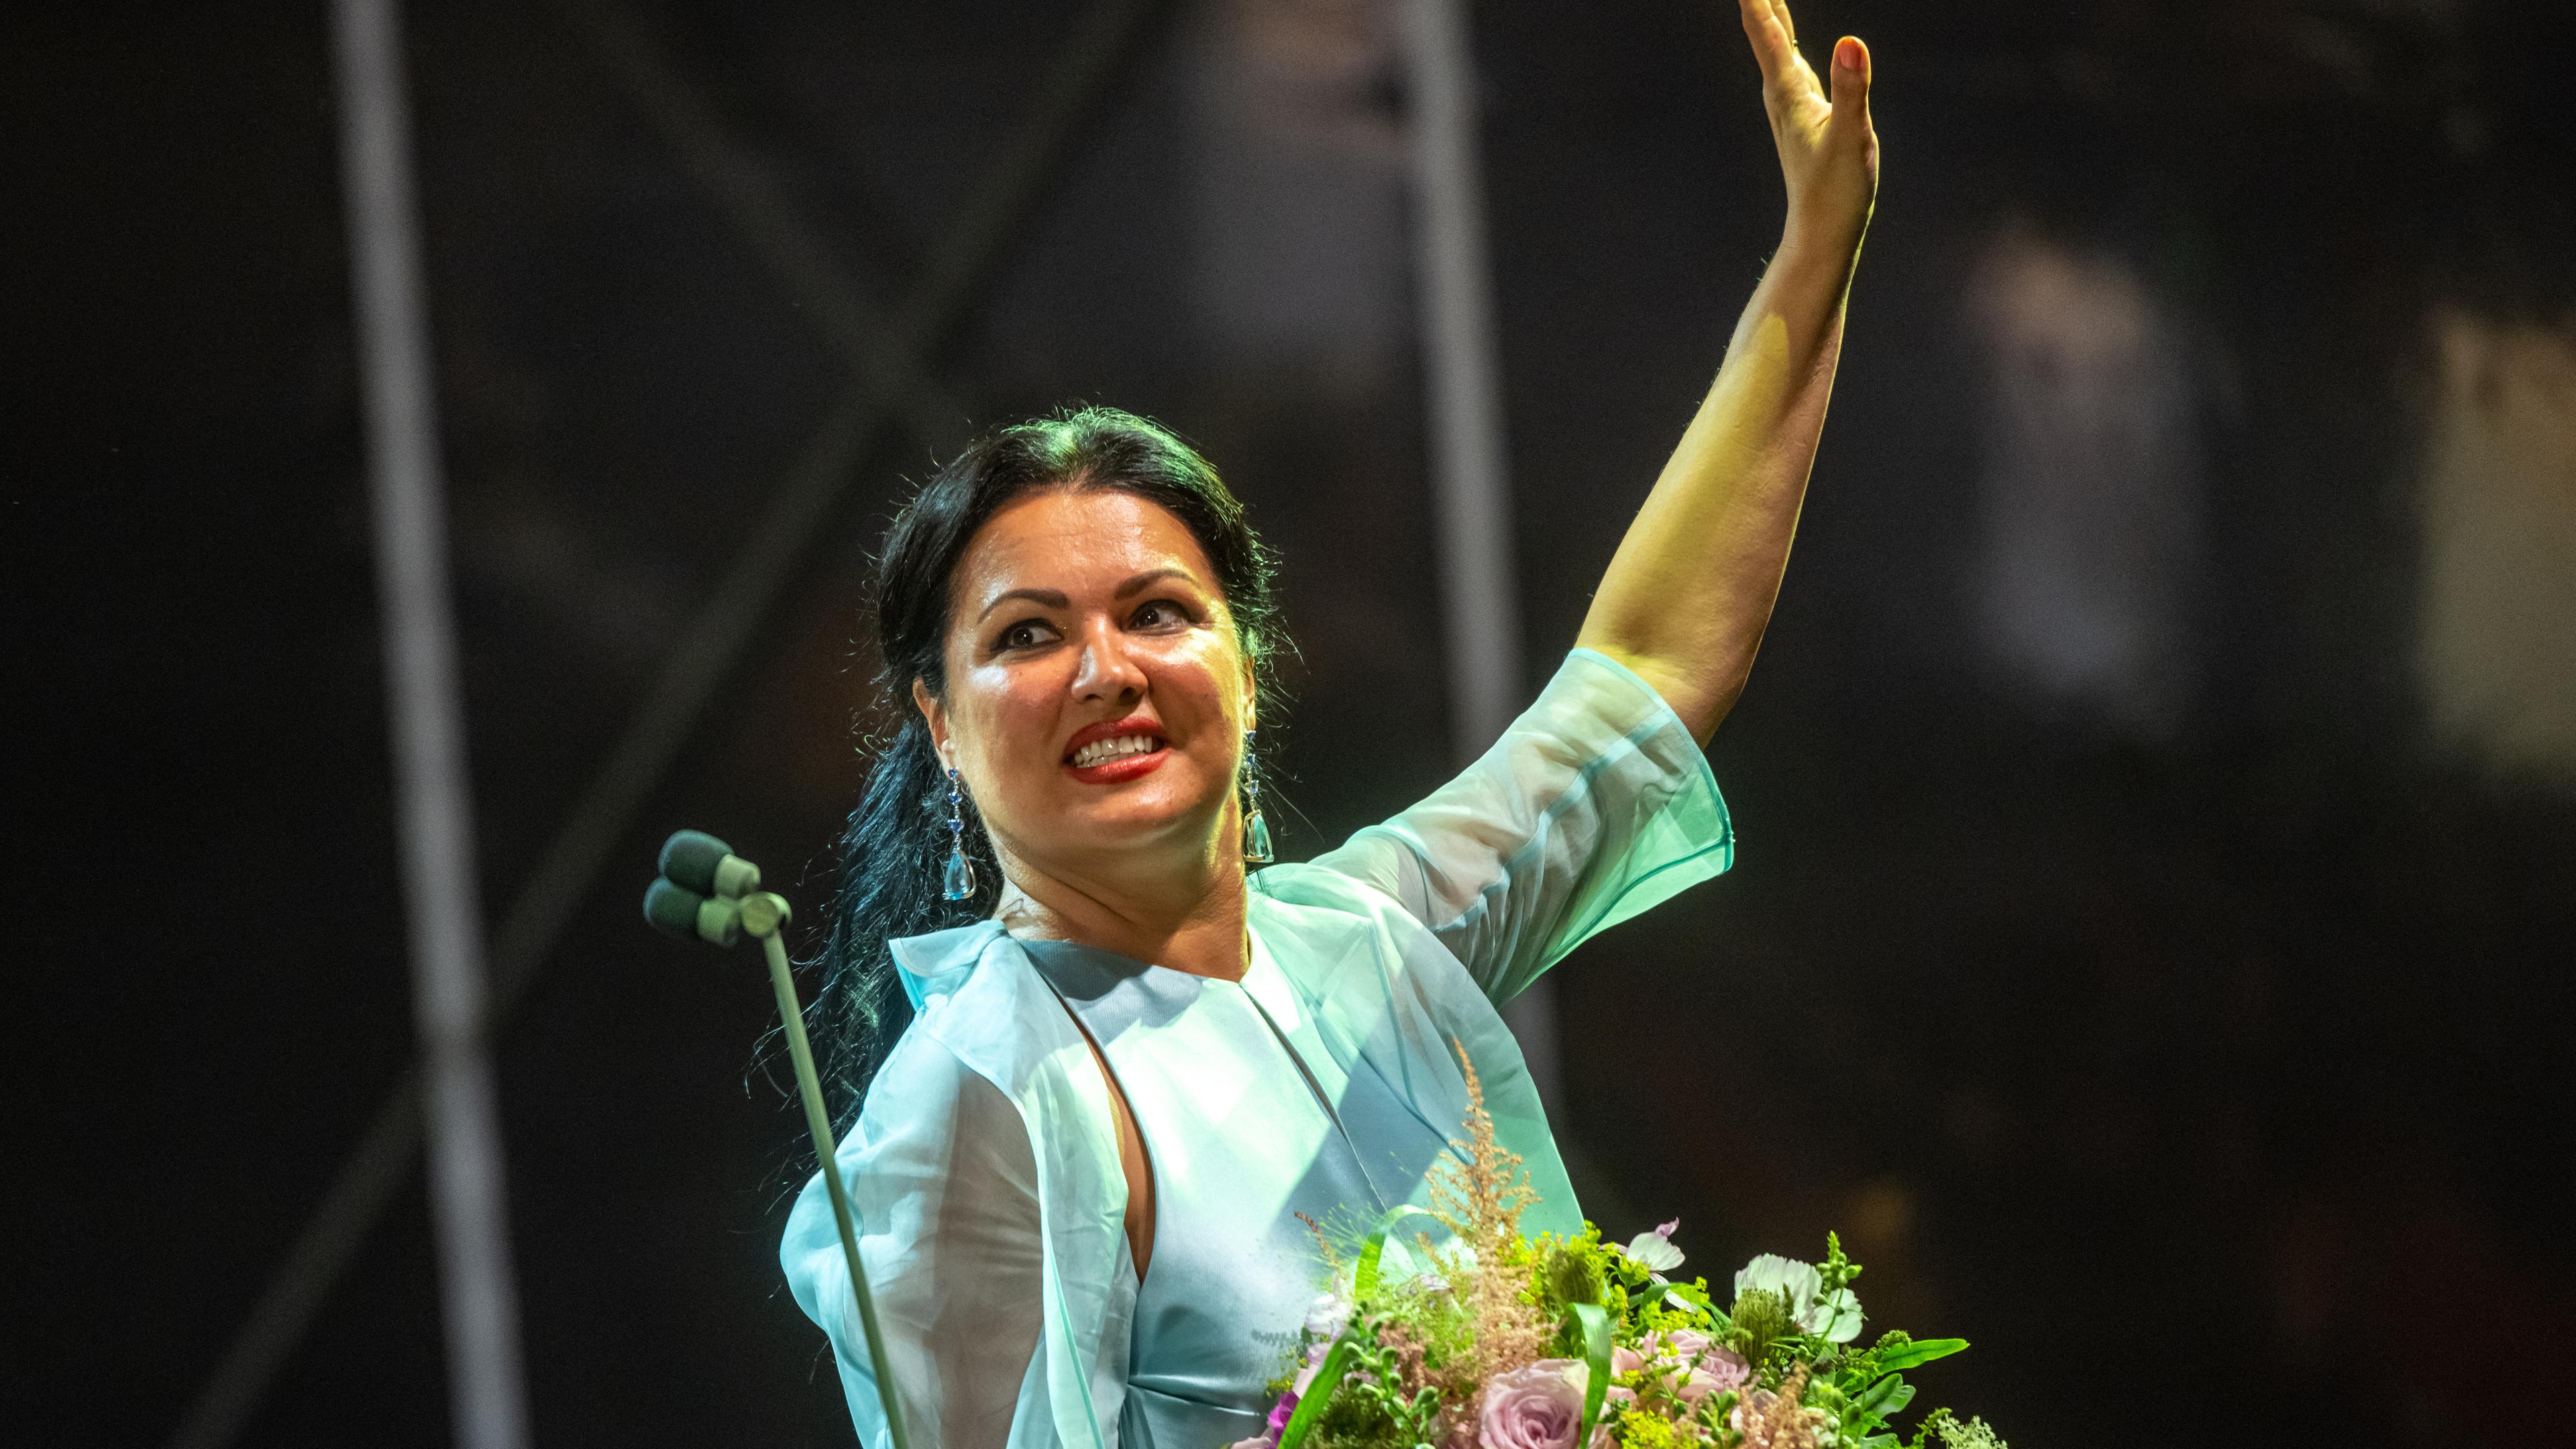 Die Sängerin Anna Netrebko hält, festlich gekleidet, einen Blumenstrauß. Die andere Hand hat sie zum Gruß gehoben.